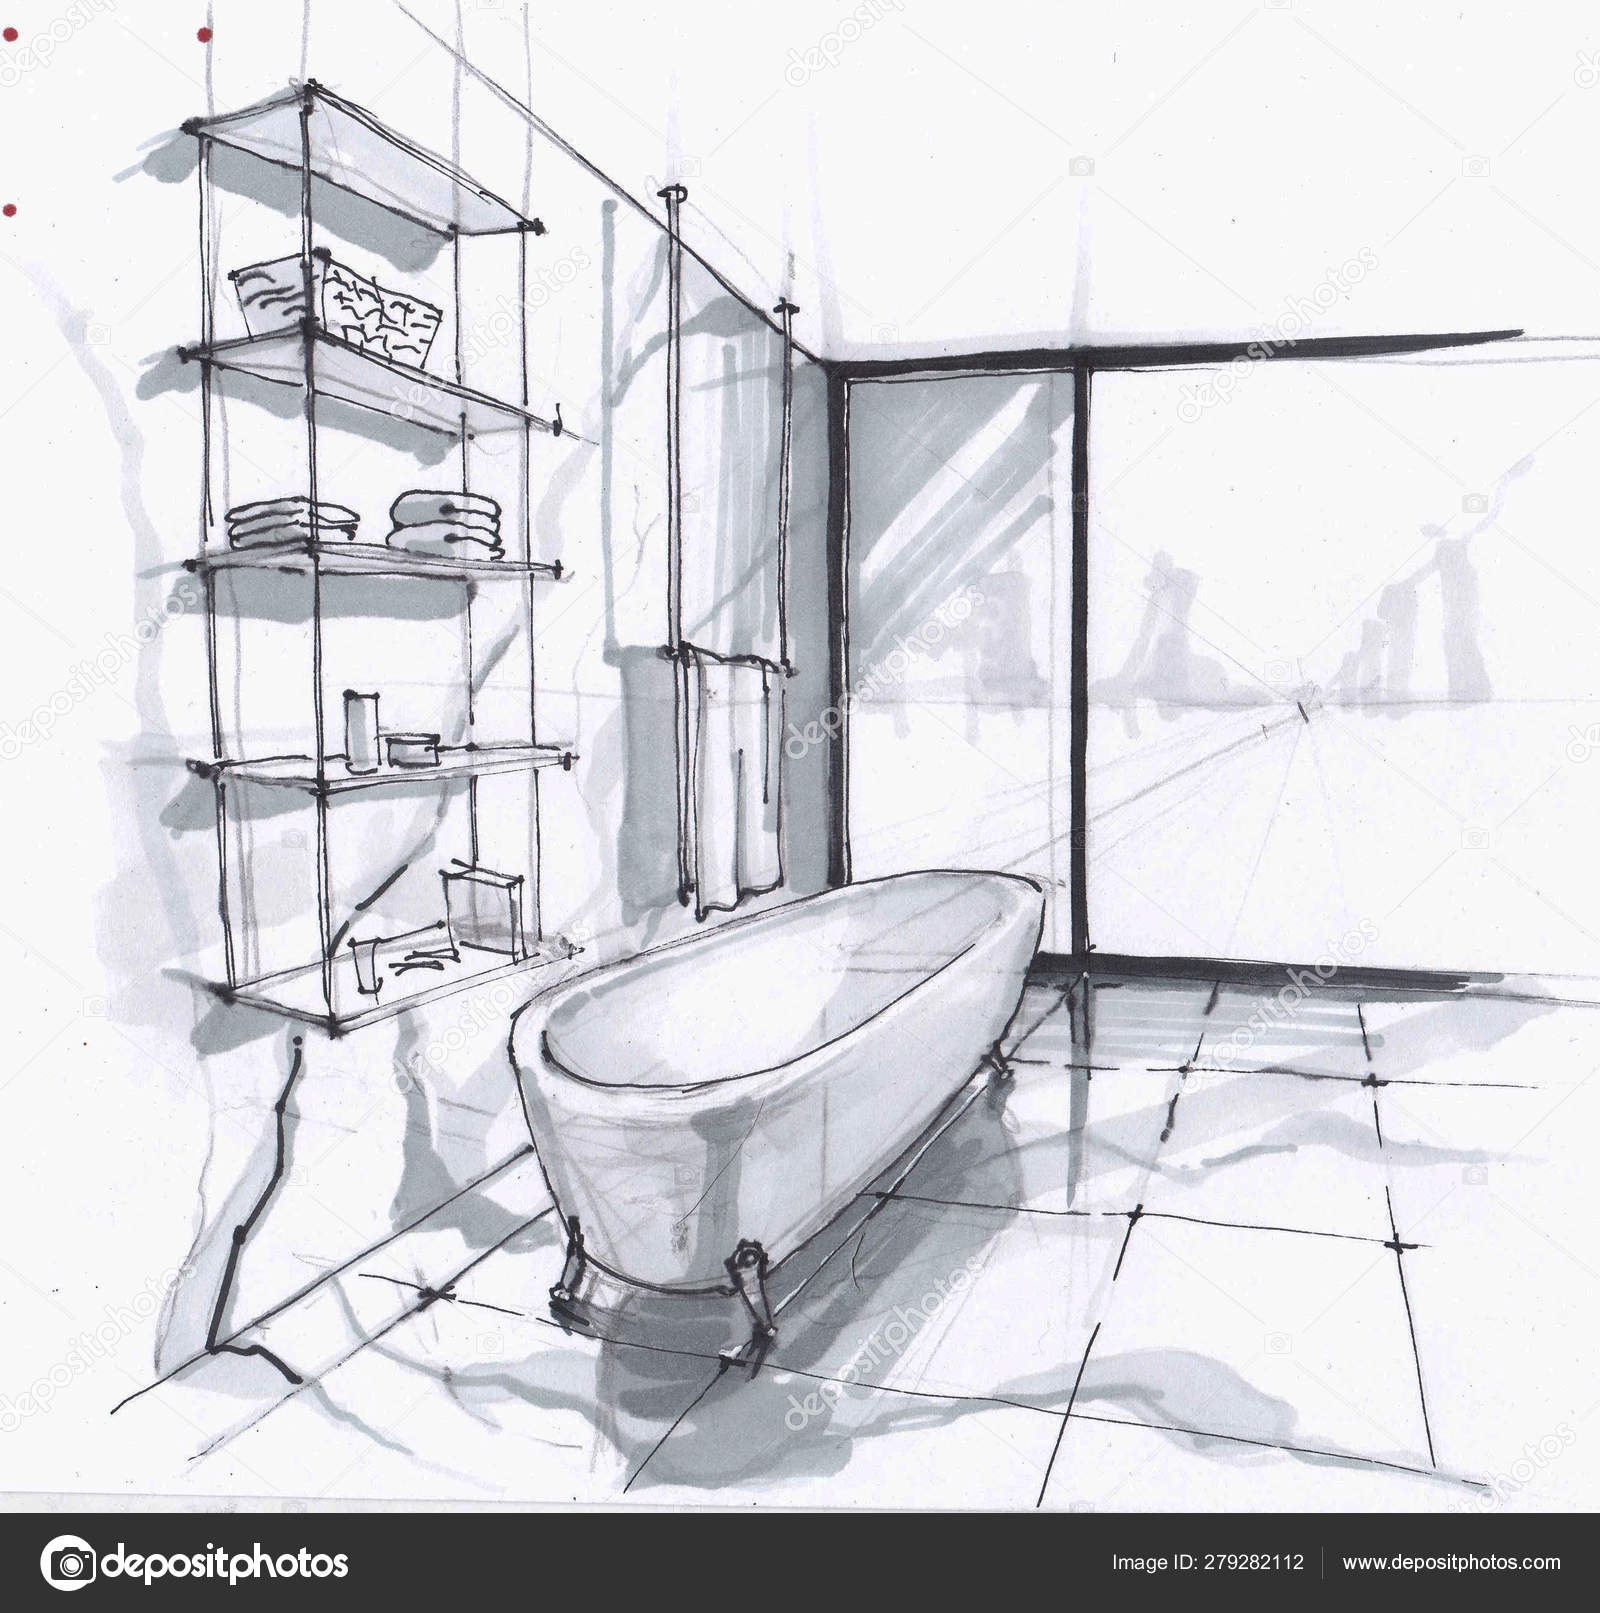 coloring a bathroom design sketch - YouTube